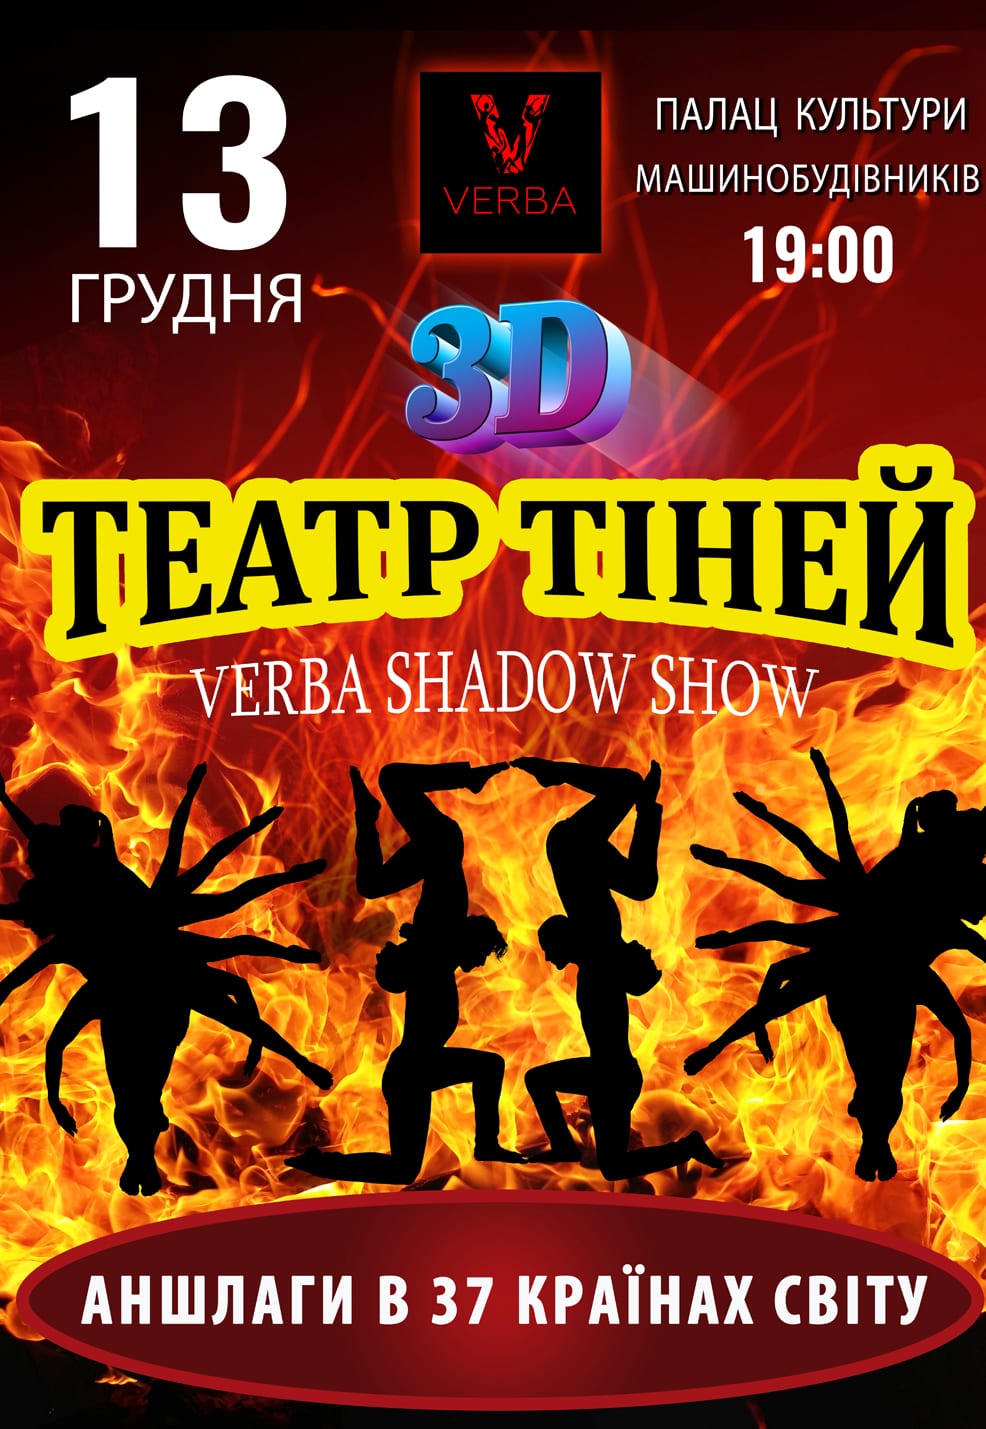 ТЕАТР ТЕНЕЙ Verba Shadow Show Днепр, 13.12.2019, купить билеты. Афиша Днепра